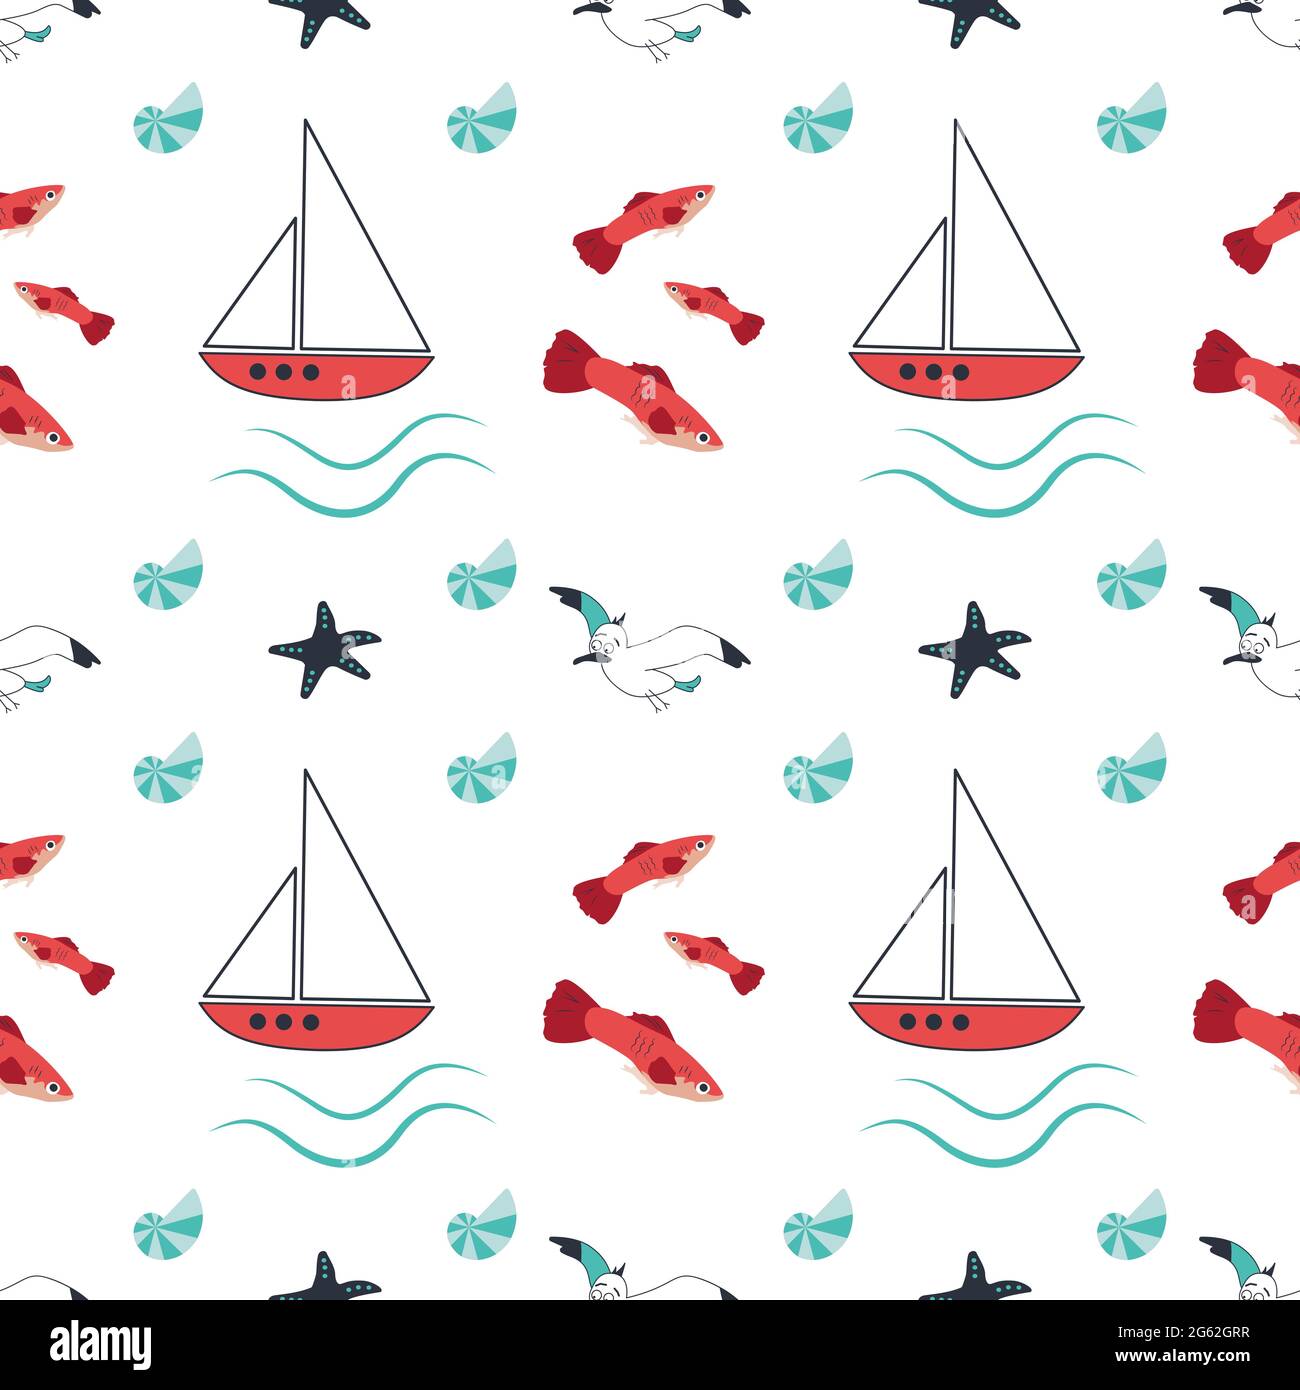 Sommerliches Meeresmuster mit Schiffen, Wellen, Seesternen, Möwen und Fischen auf weißem Hintergrund Stock Vektor